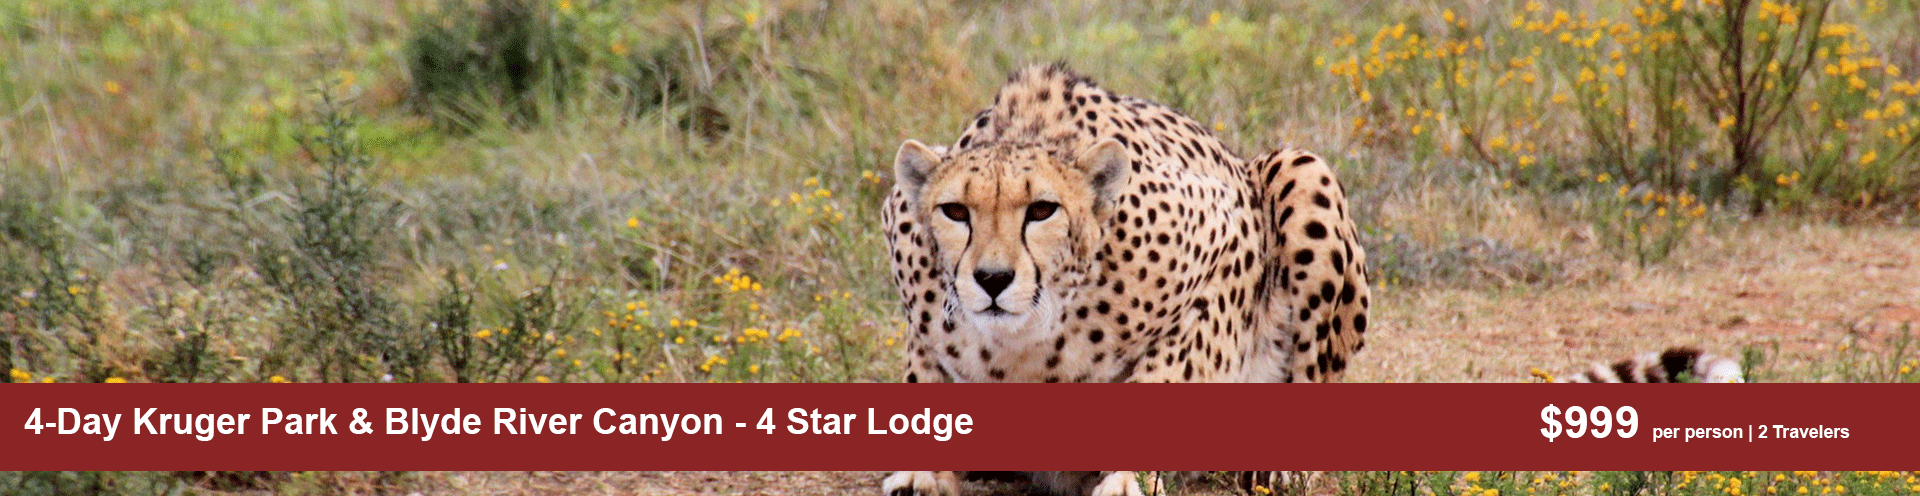 4-Day Kruger Park & Blyde River Canyon - 4 Star Lodge